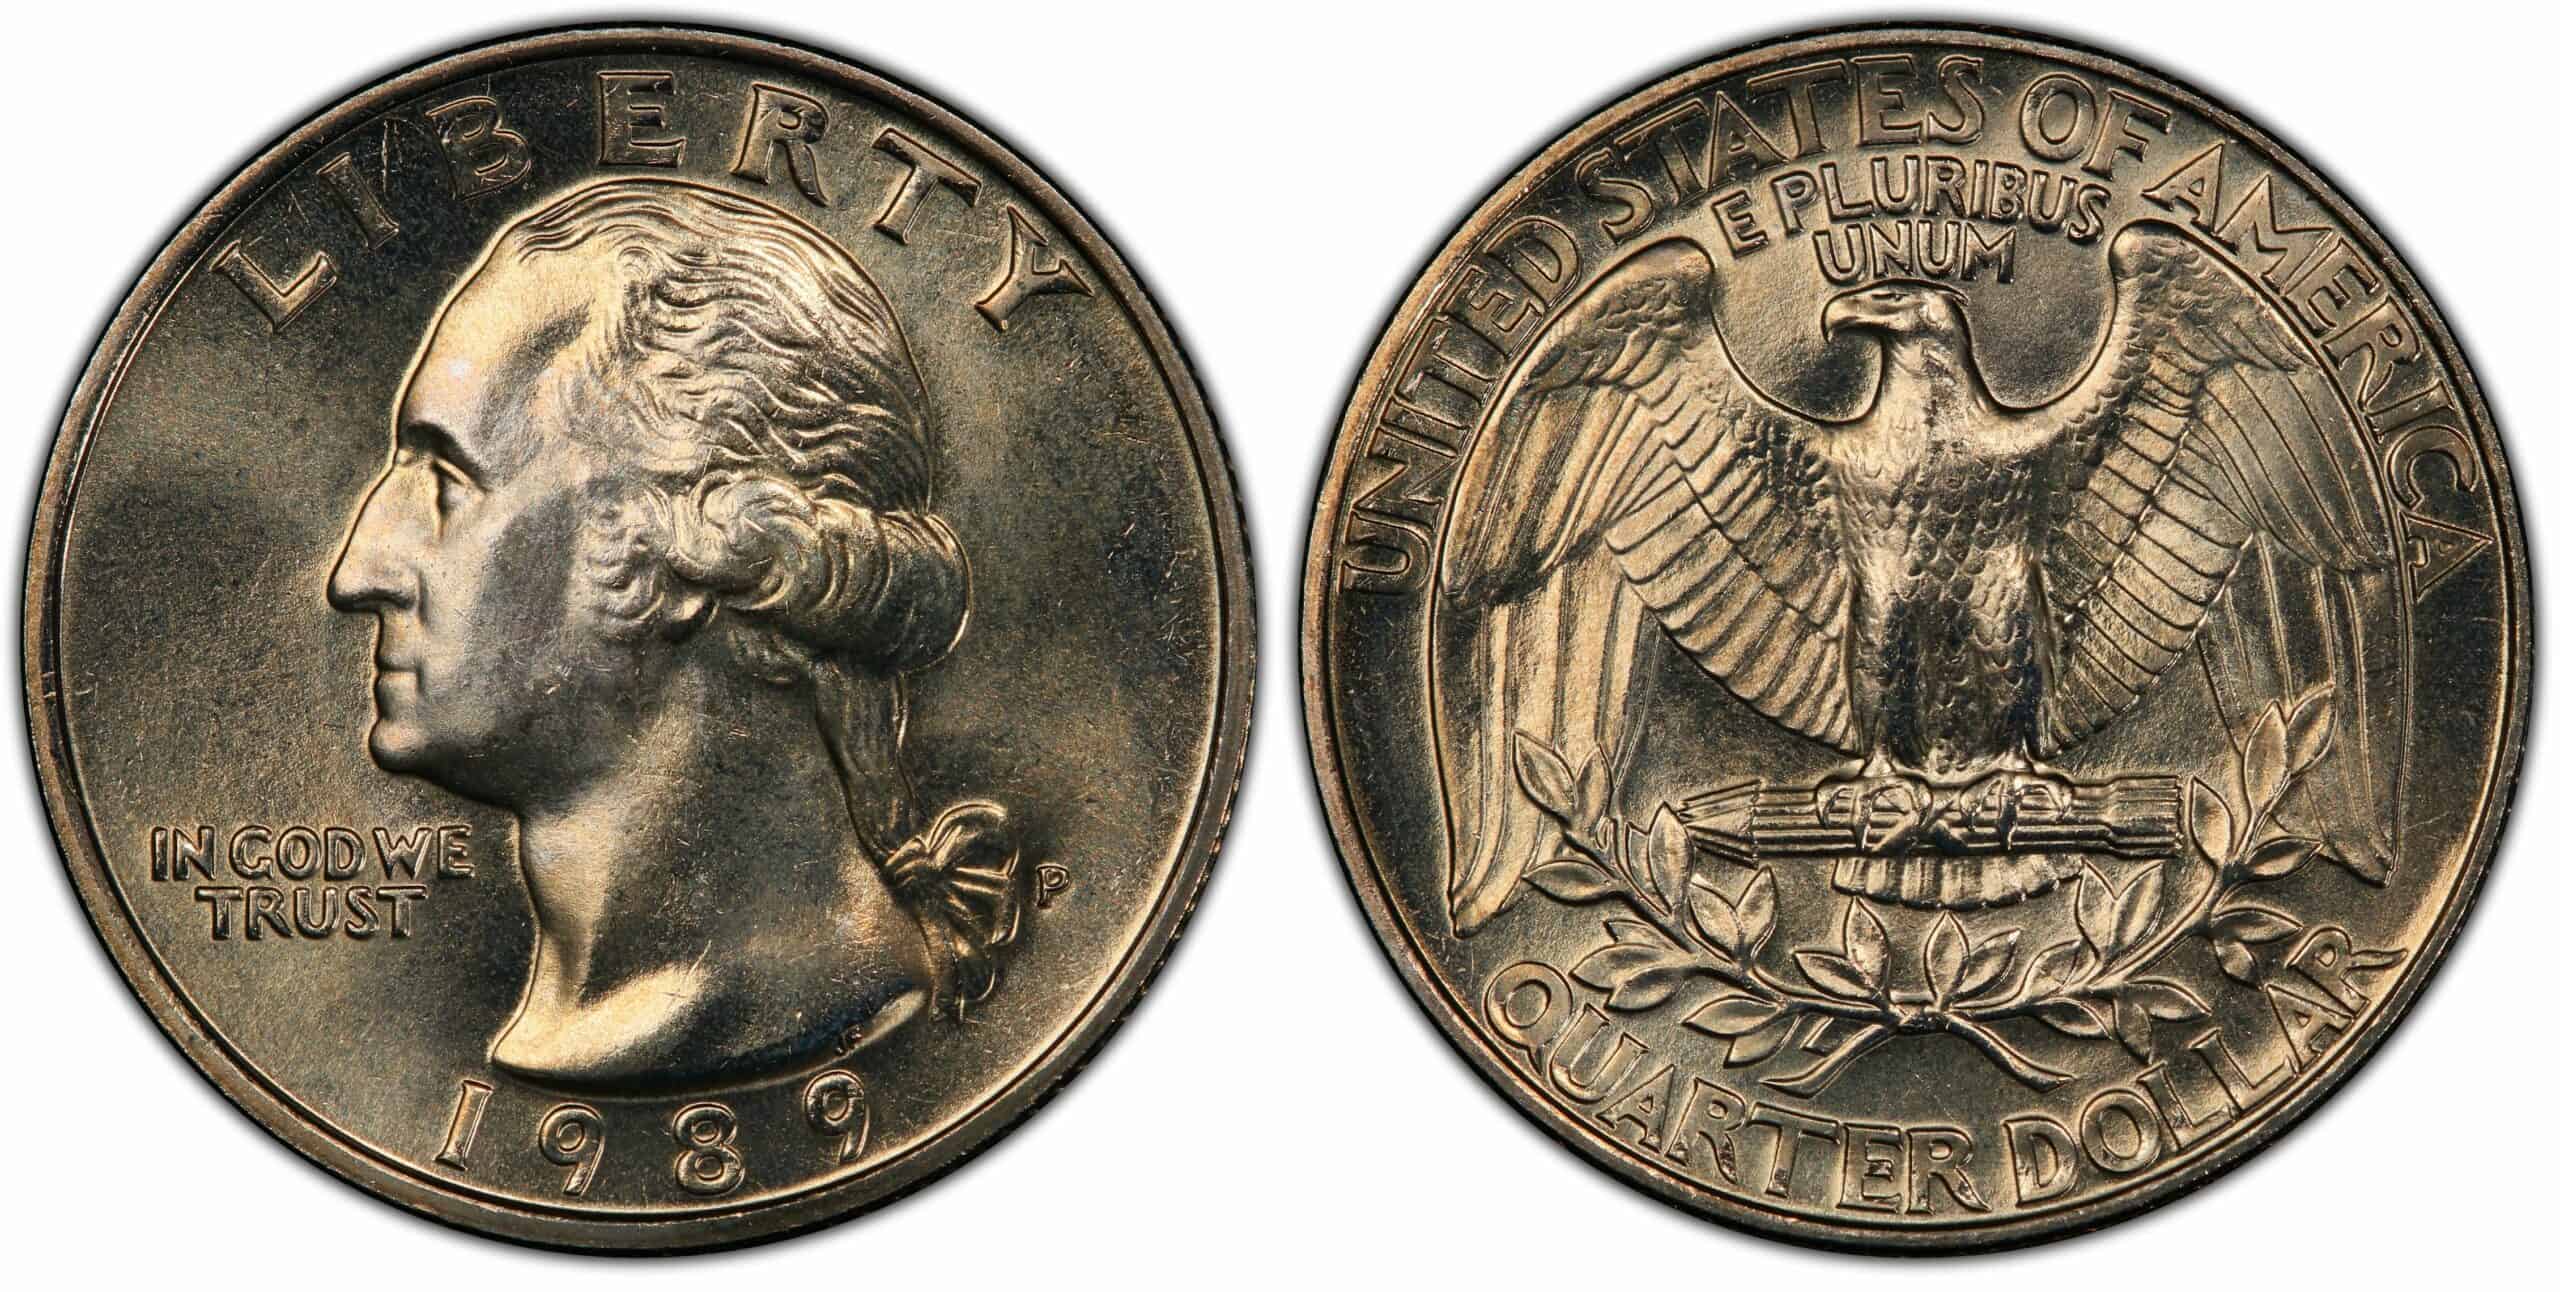 1989 P Quarter